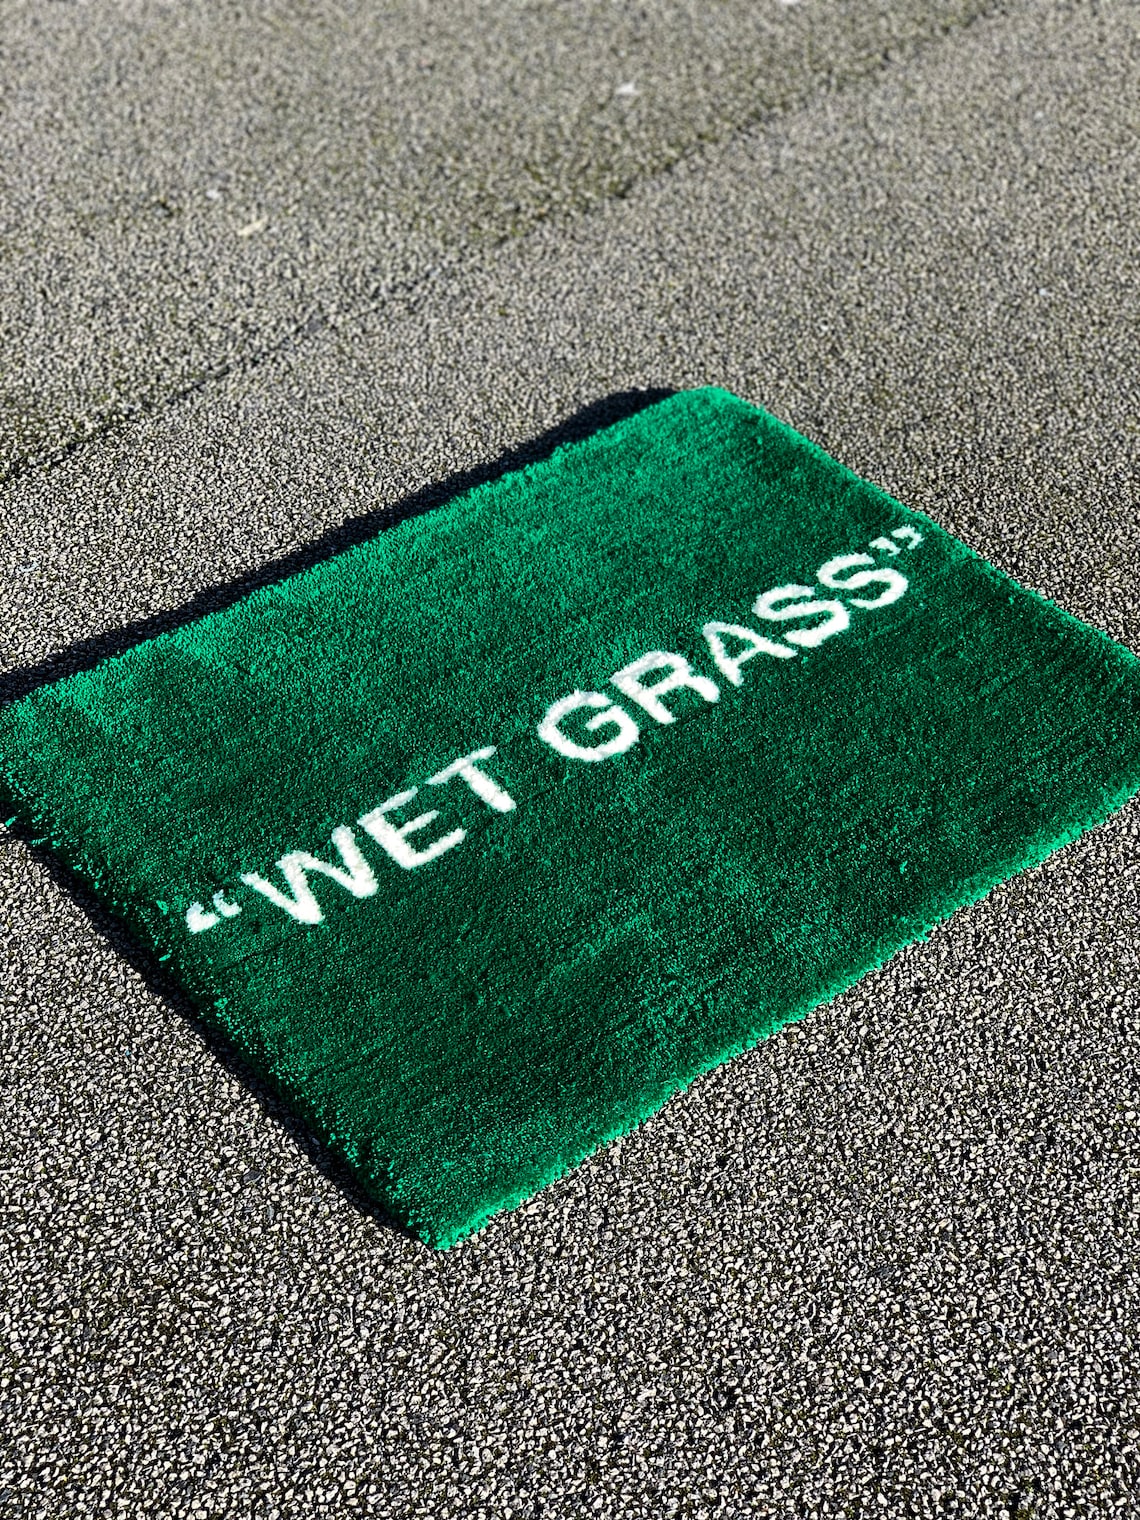 Handmade wet Grass Tufted Rug Custom Colours / - Etsy UK